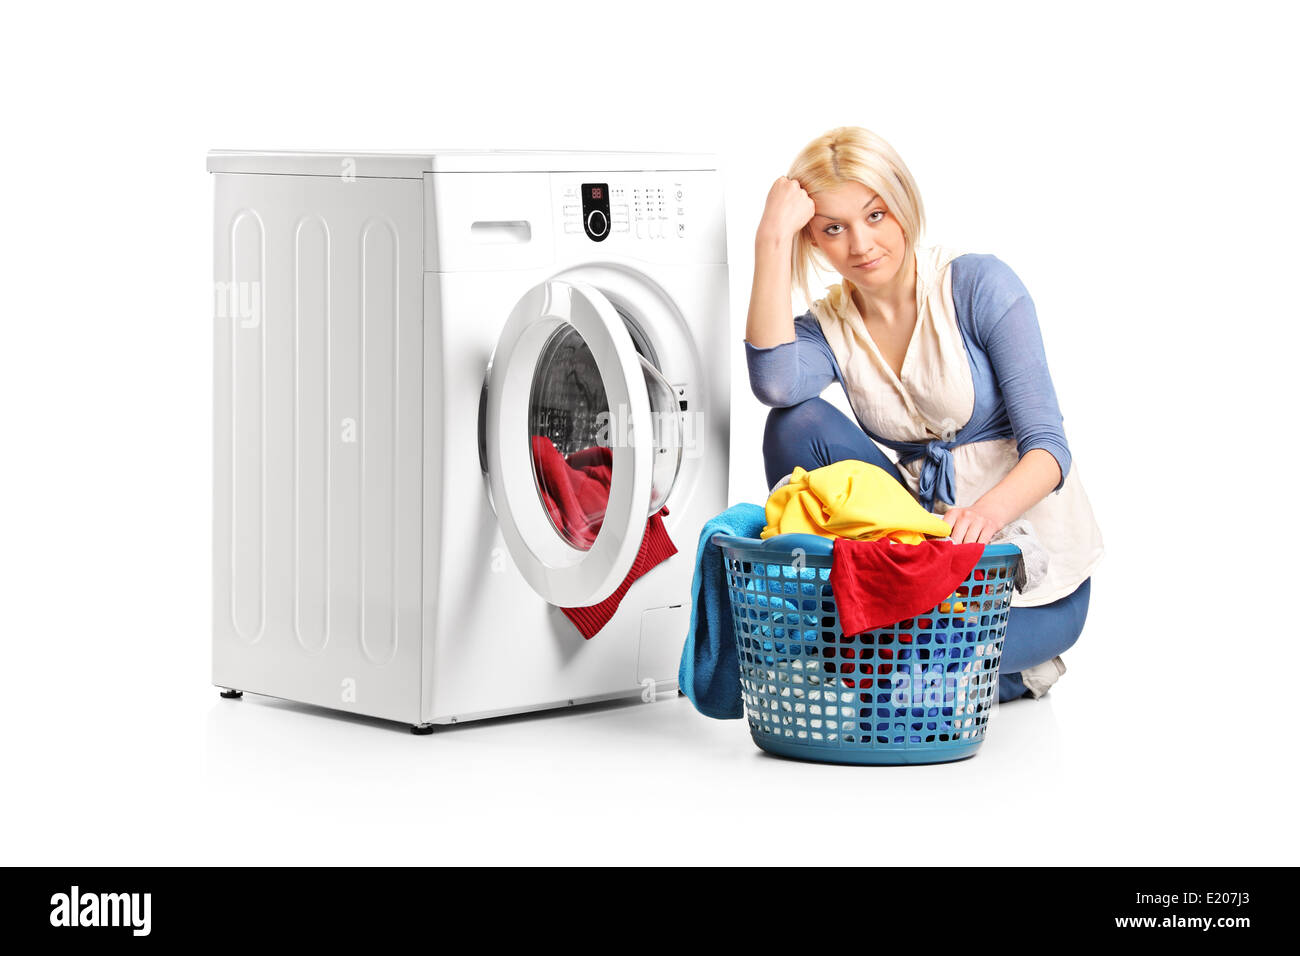 Una persona lavando la ropa Imágenes recortadas de stock - Página 2 - Alamy